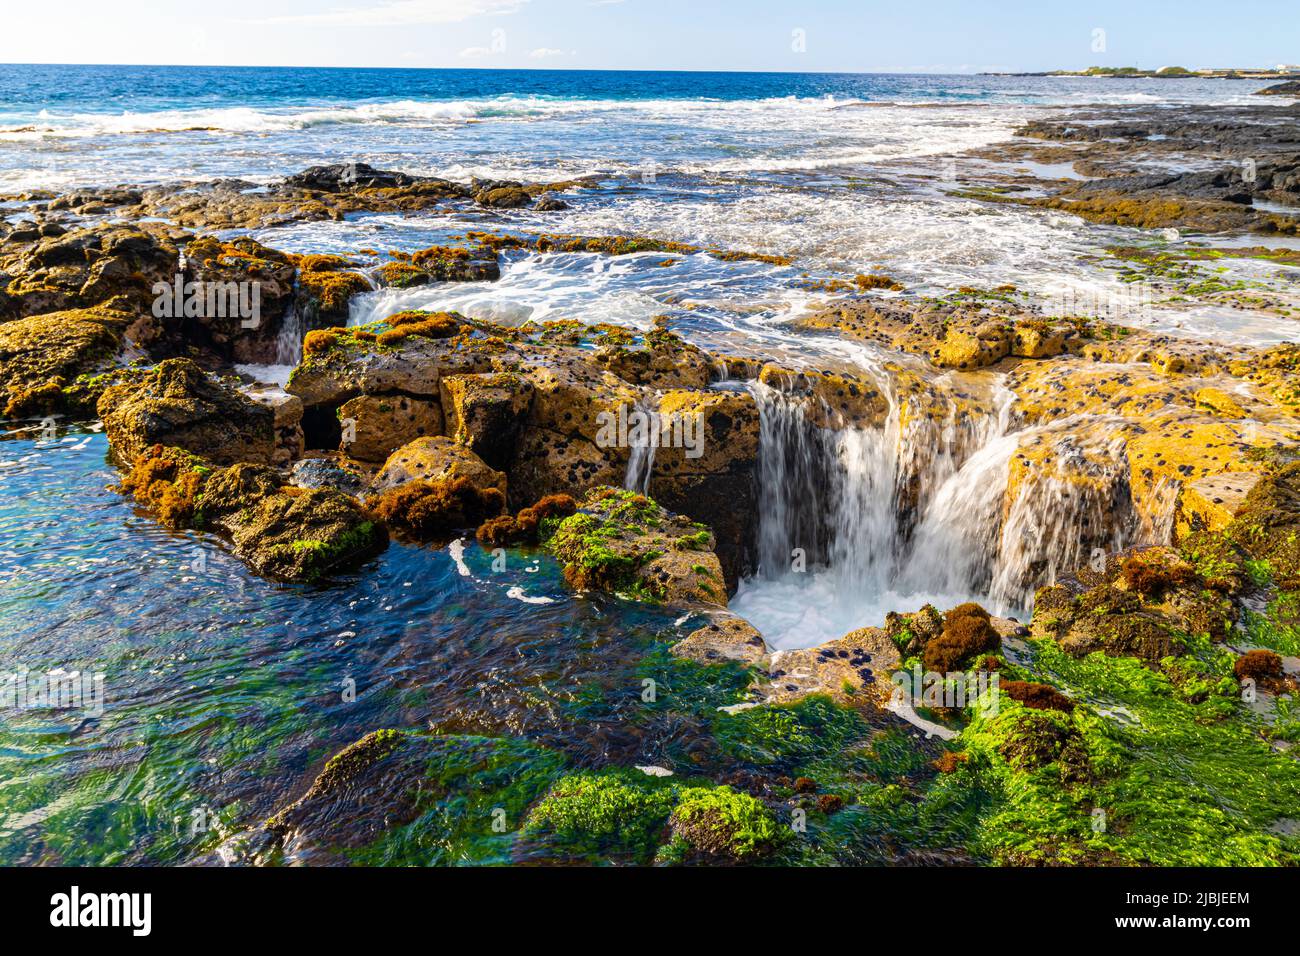 Pele's Well on The Kona Coast, Hawaii Island, Hawaii, USA Stock Photo